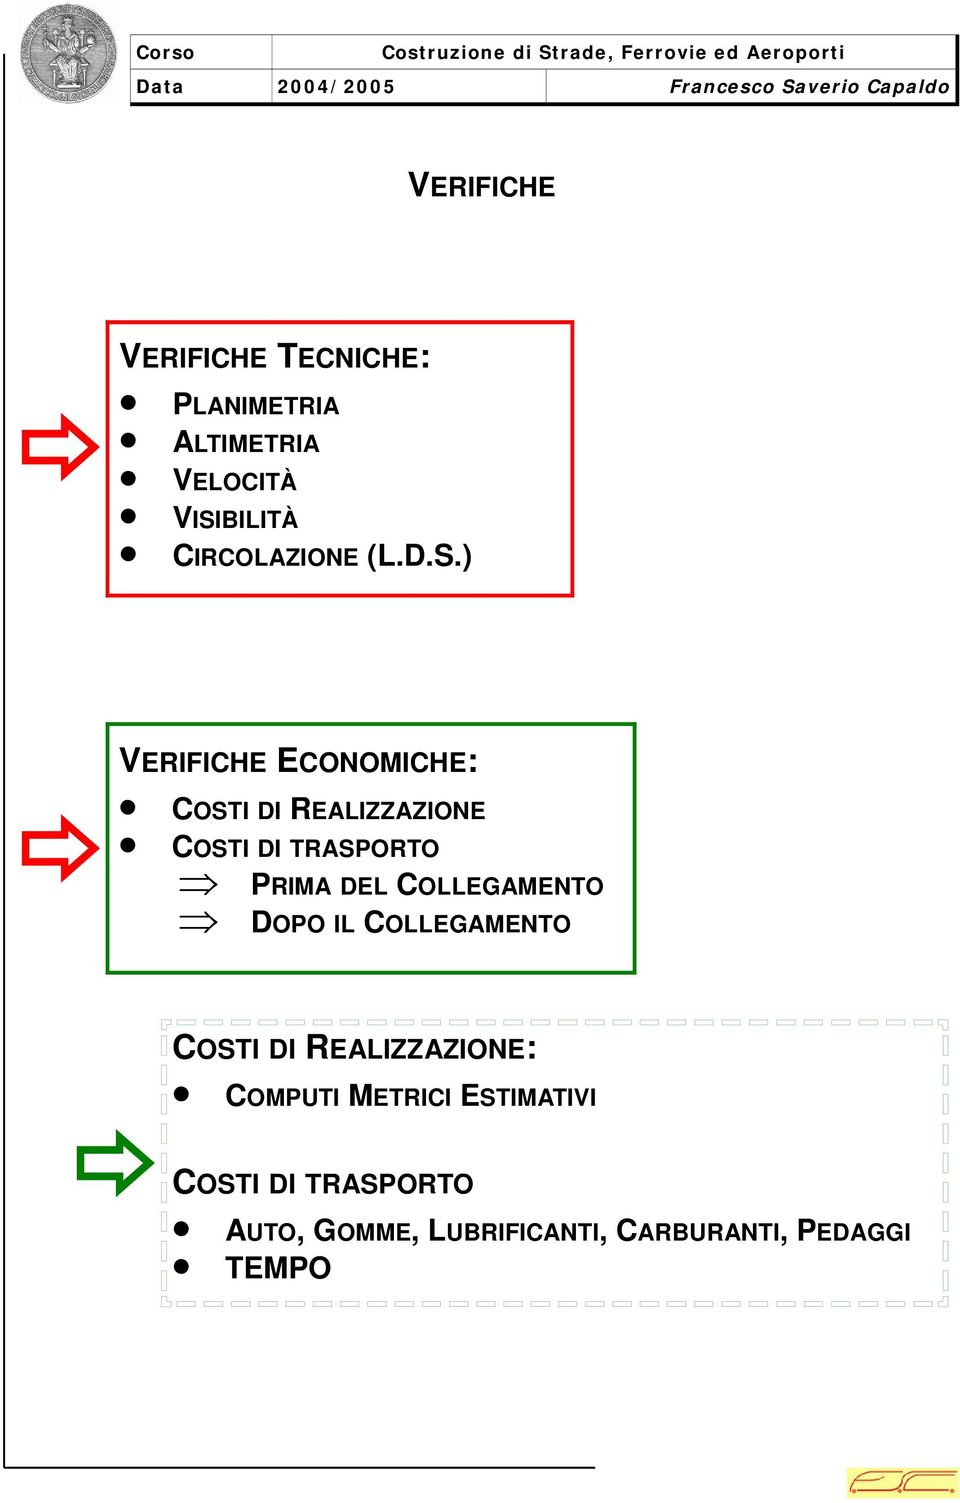 ) ERIFICHE ECONOMICHE: COSTI I REALIZZAZIONE COSTI I TRASPORTO PRIMA EL